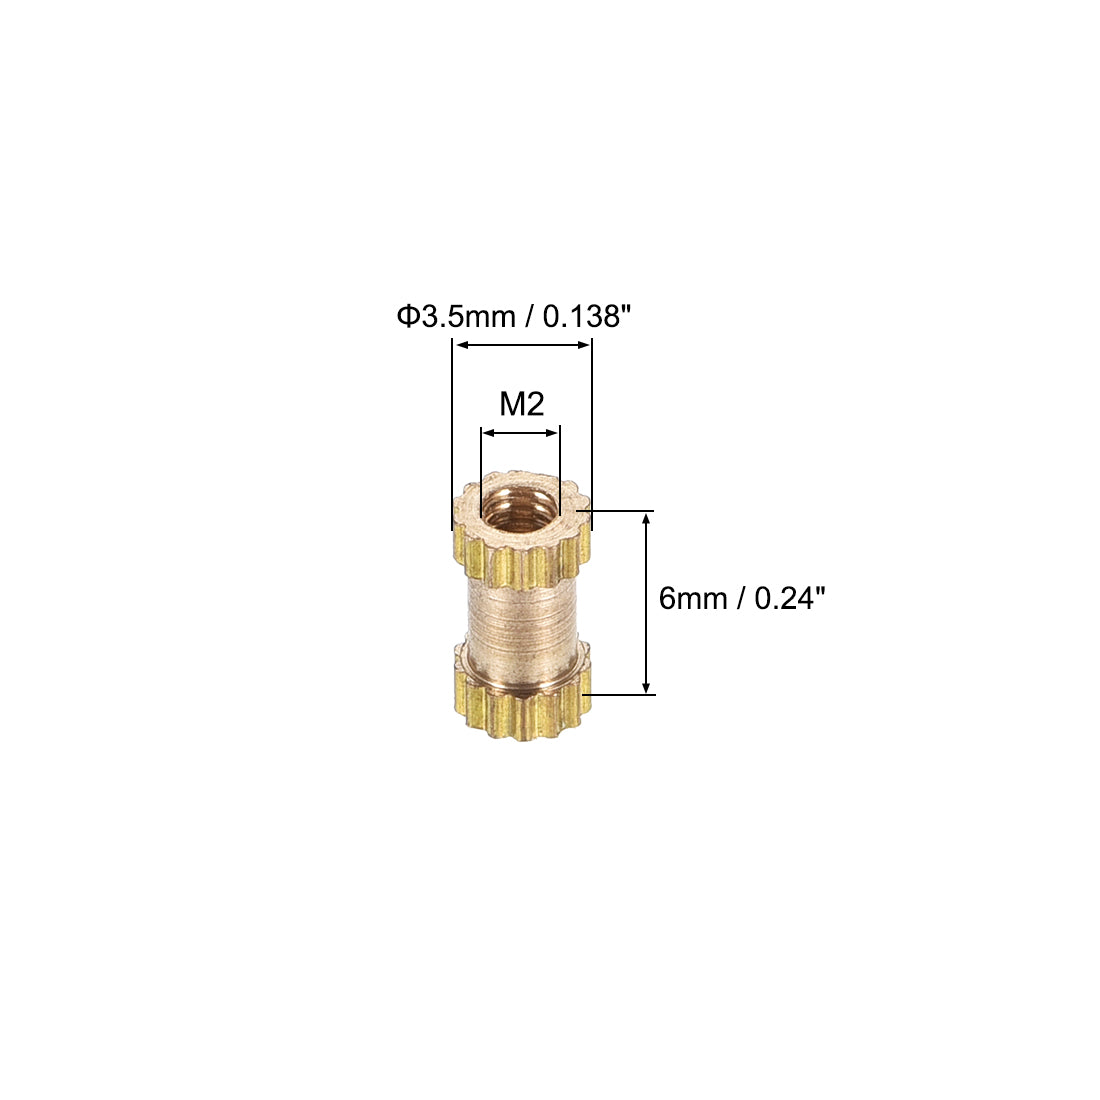 uxcell Uxcell Knurled Insert Nuts, M2 x 6mm(L) x 3.5mm(OD) Female Thread Brass Embedment Assortment Kit, 100 Pcs